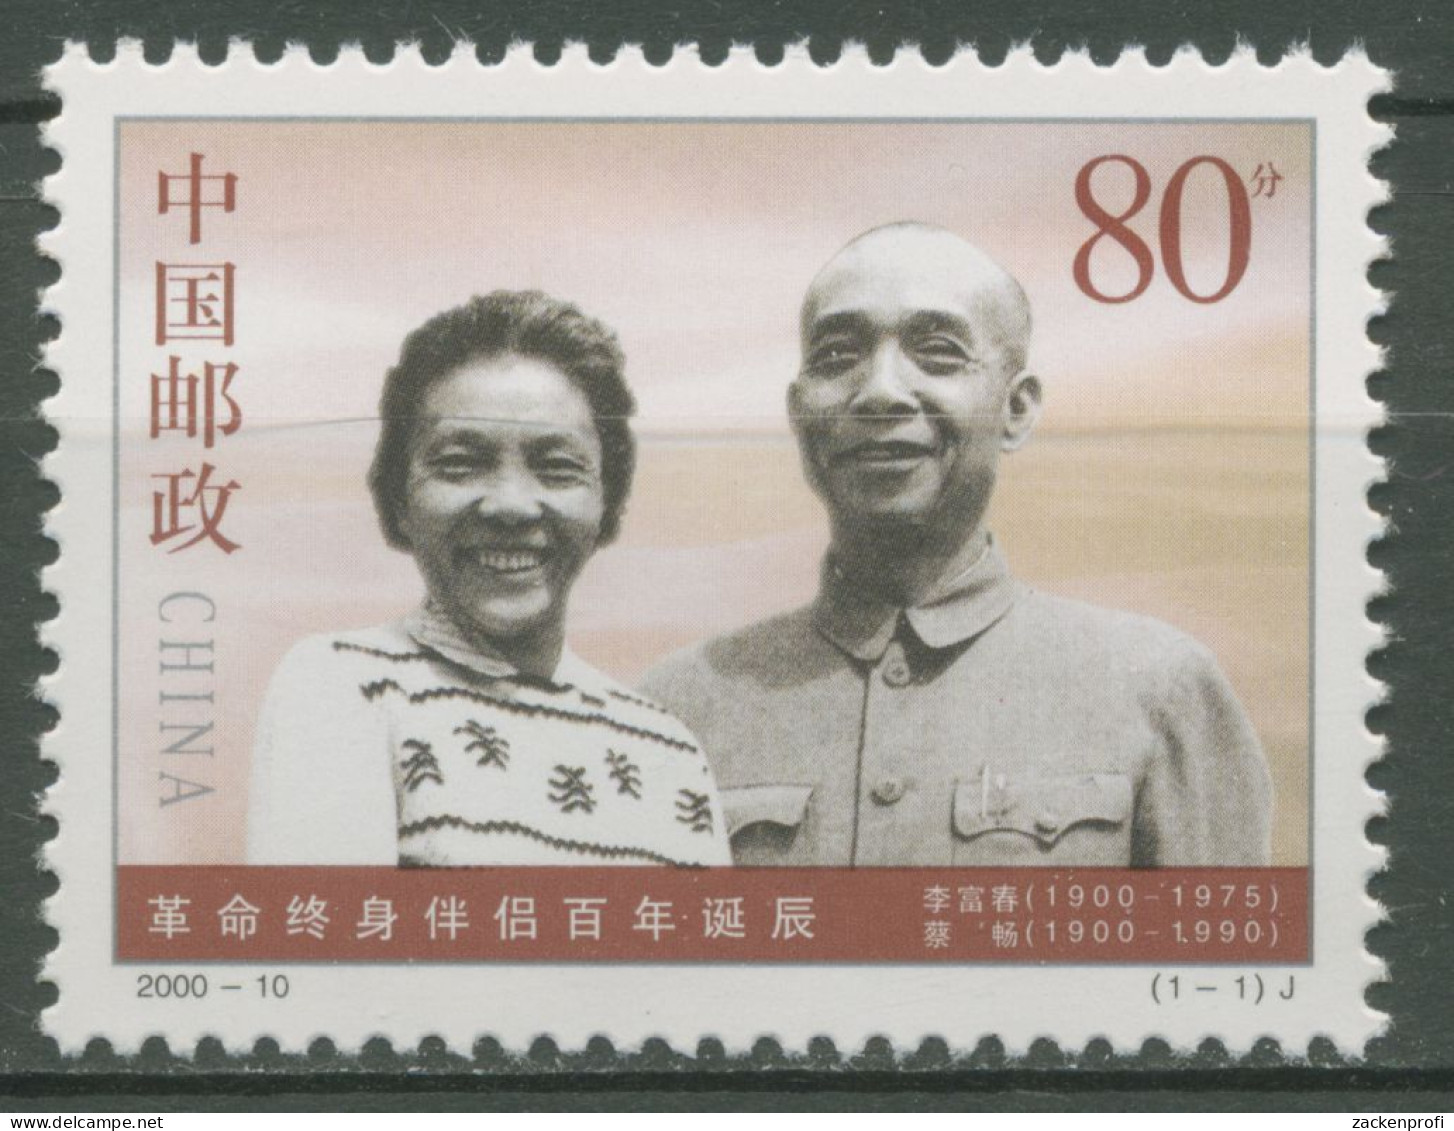 China 2000 Revolutionäre Cai Chang & Li Fuchun 3147 Postfrisch - Ungebraucht